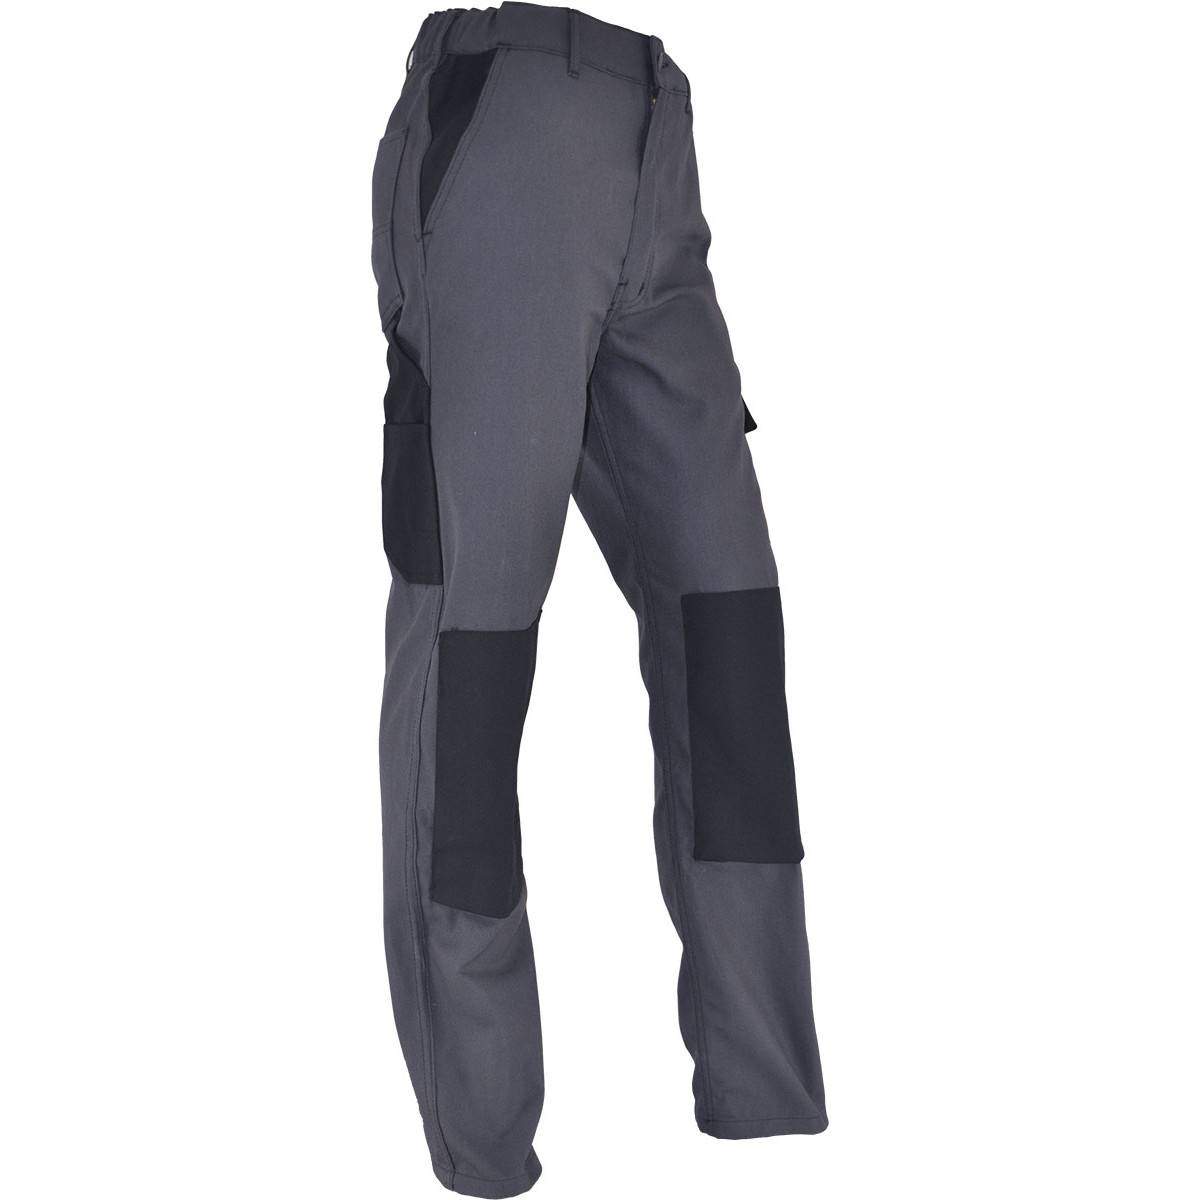 Pantalon de travail confort taille 46, gris Anthracite, poches multiples, genouillères chantiers incluses